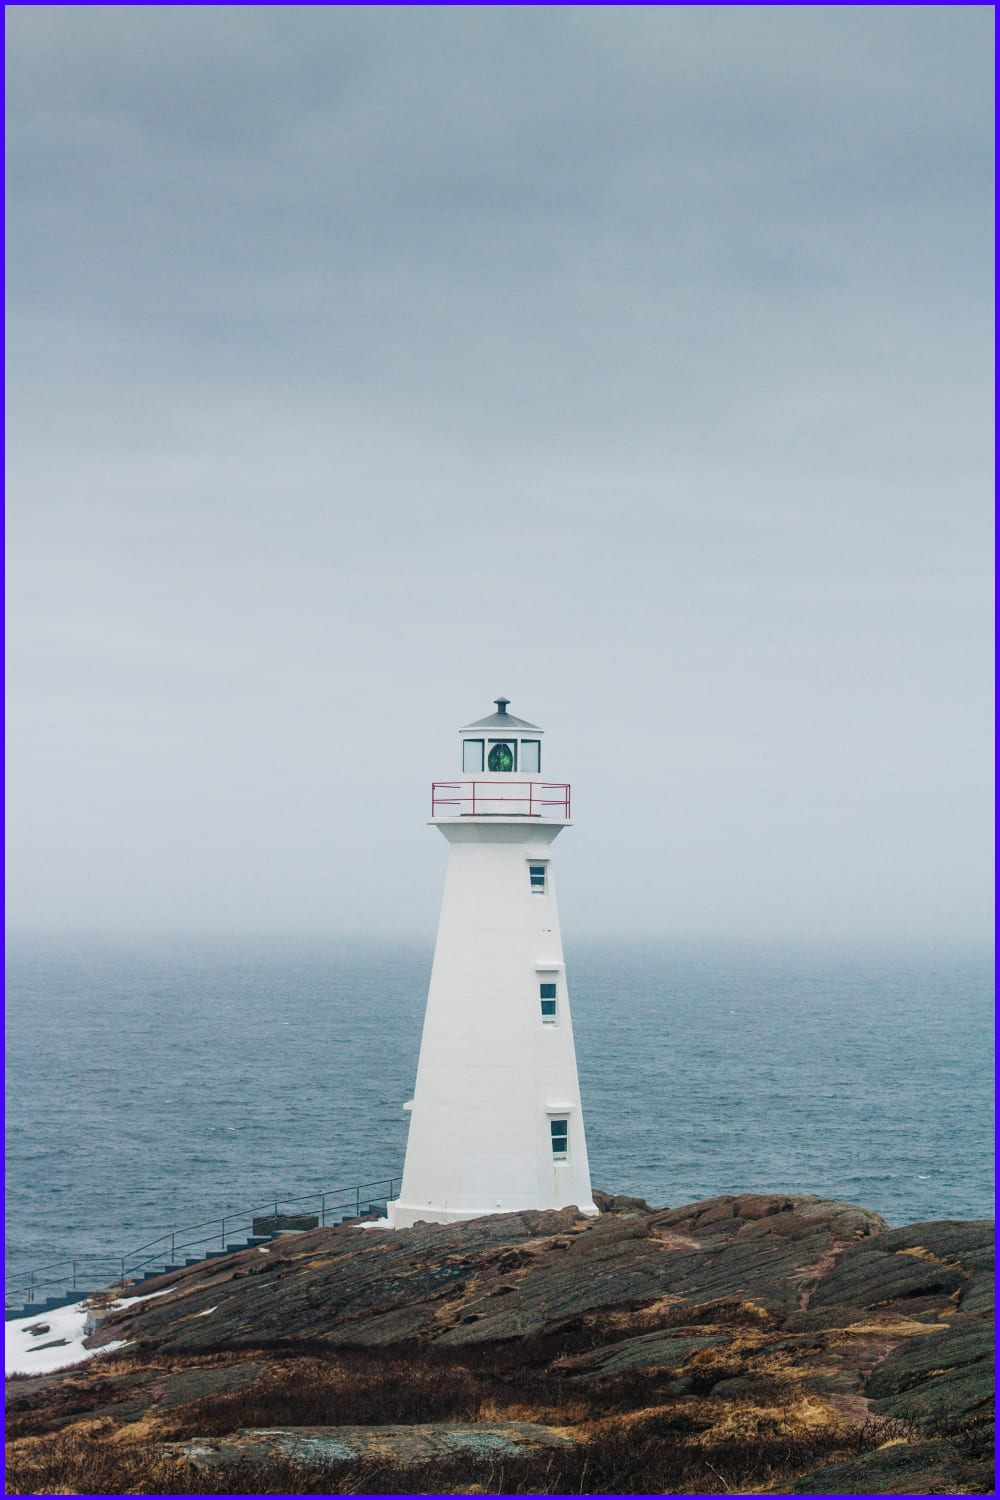 Lighthouse on a foggy day at Cape Spear St. John's, Newfoundland.